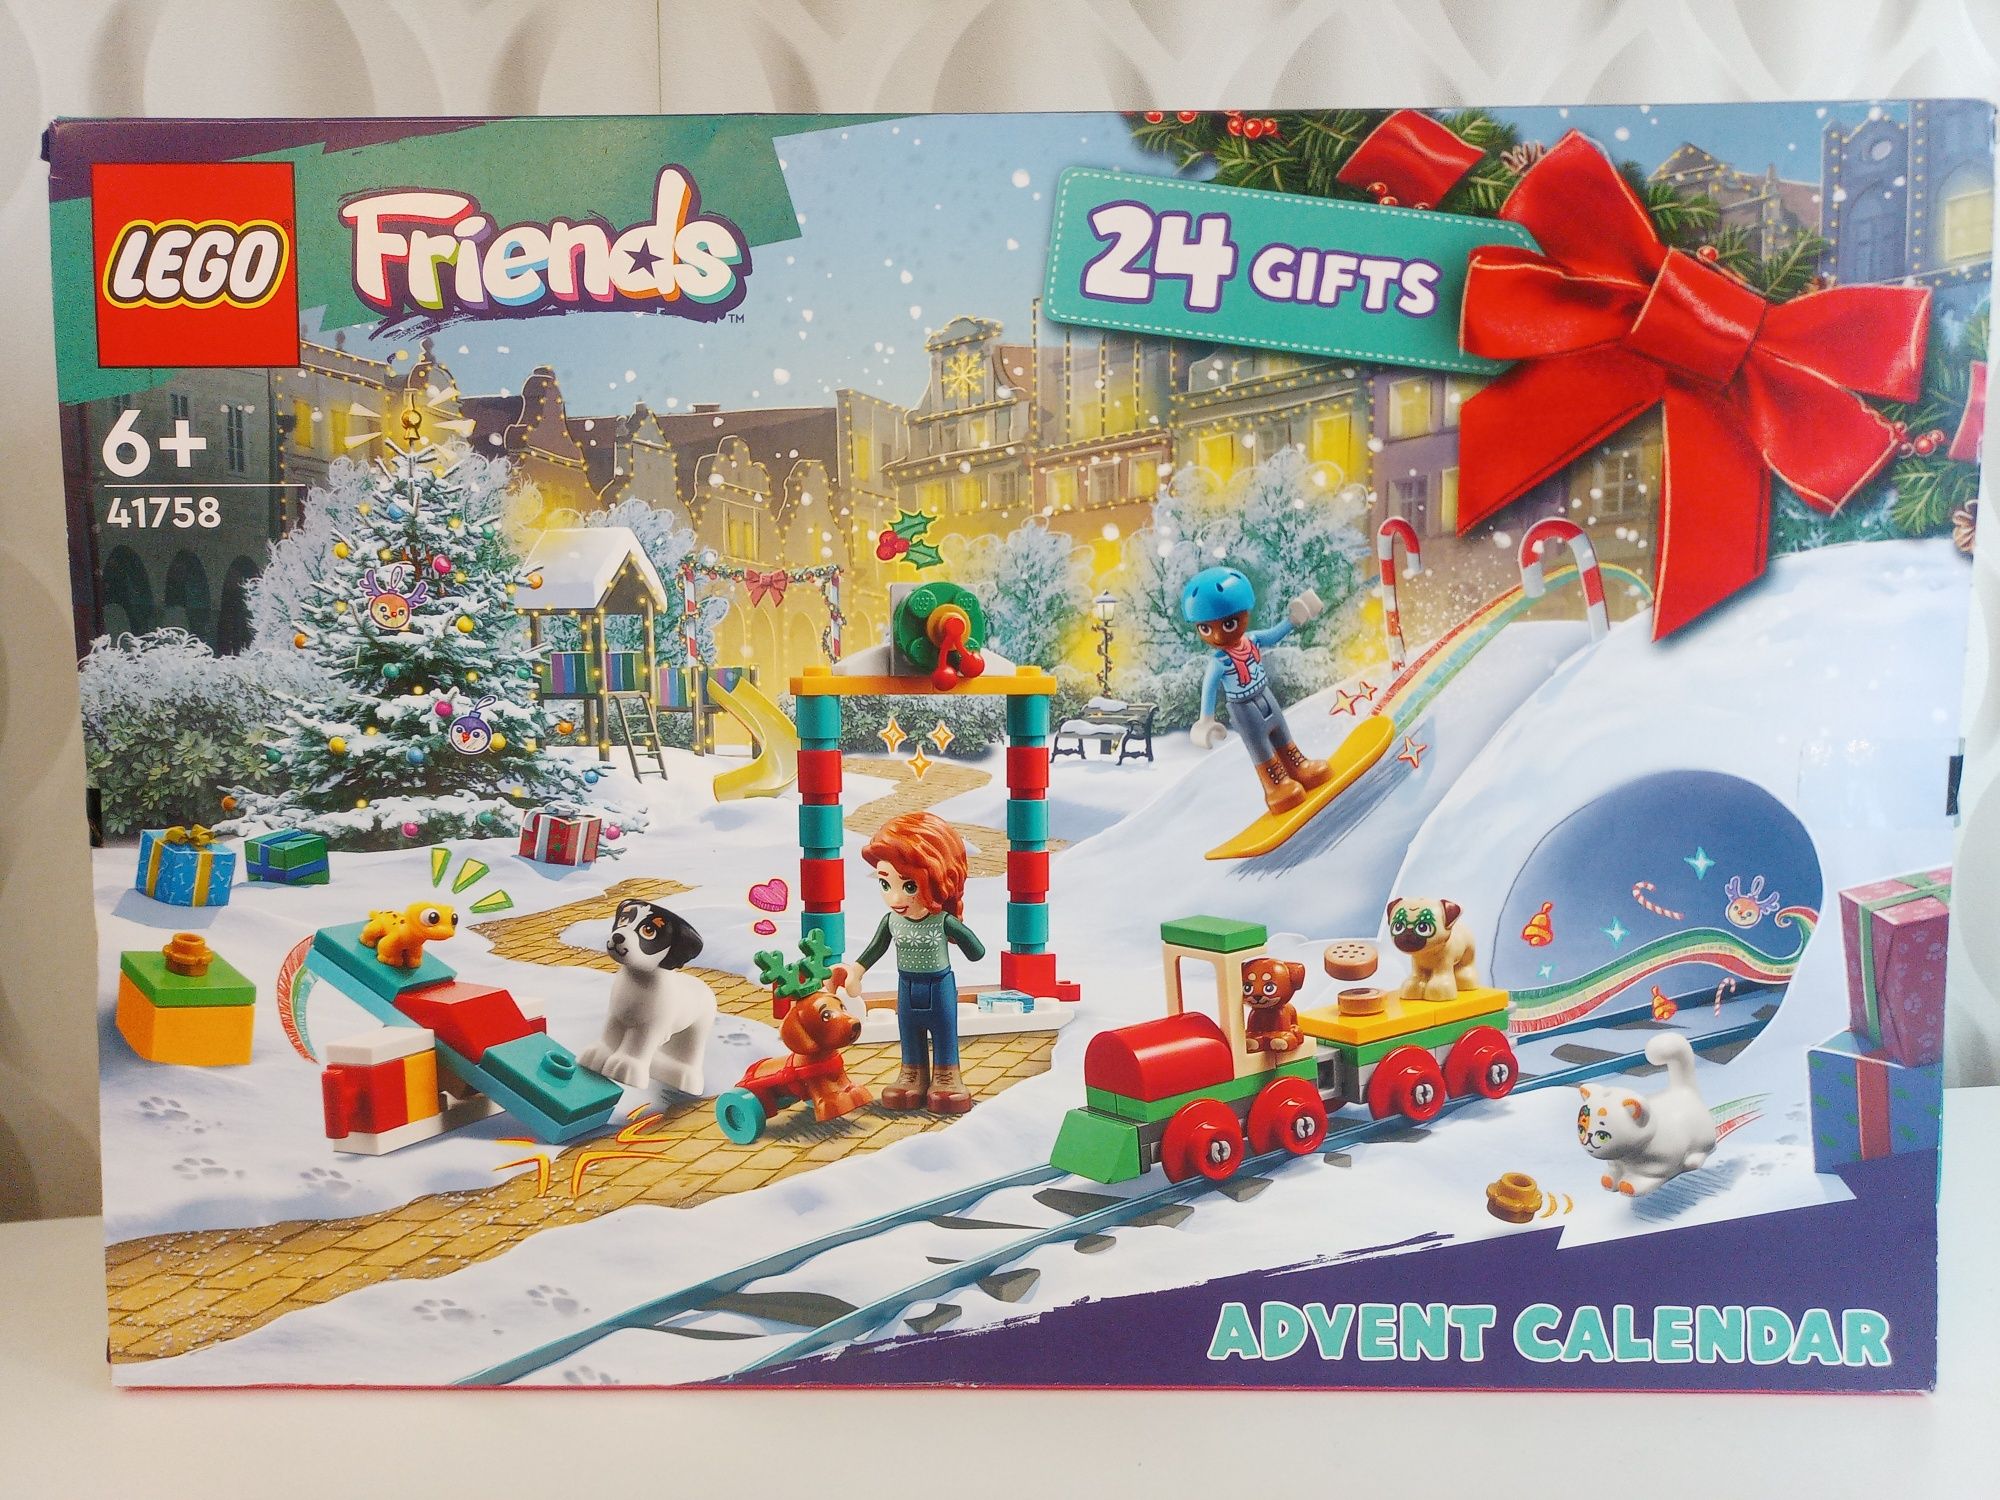 Nowy Kalendarz adwentowy Lego Friends.